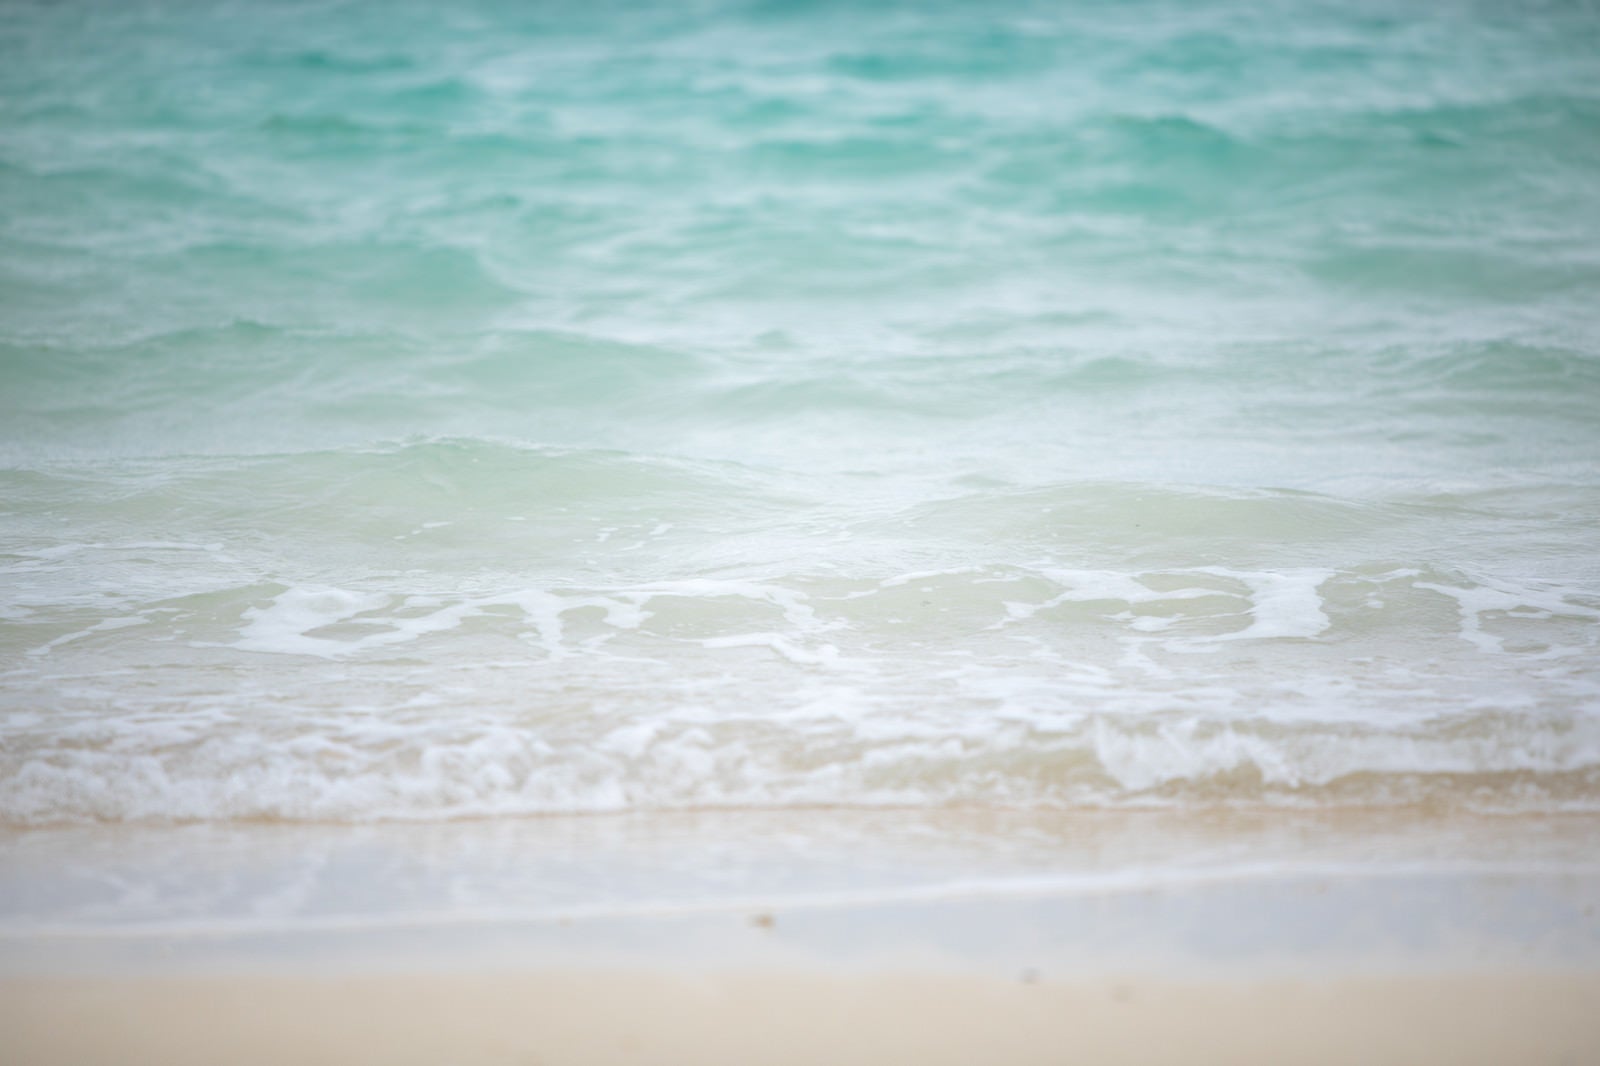 「エメラルドグリーンの海と砂浜」の写真